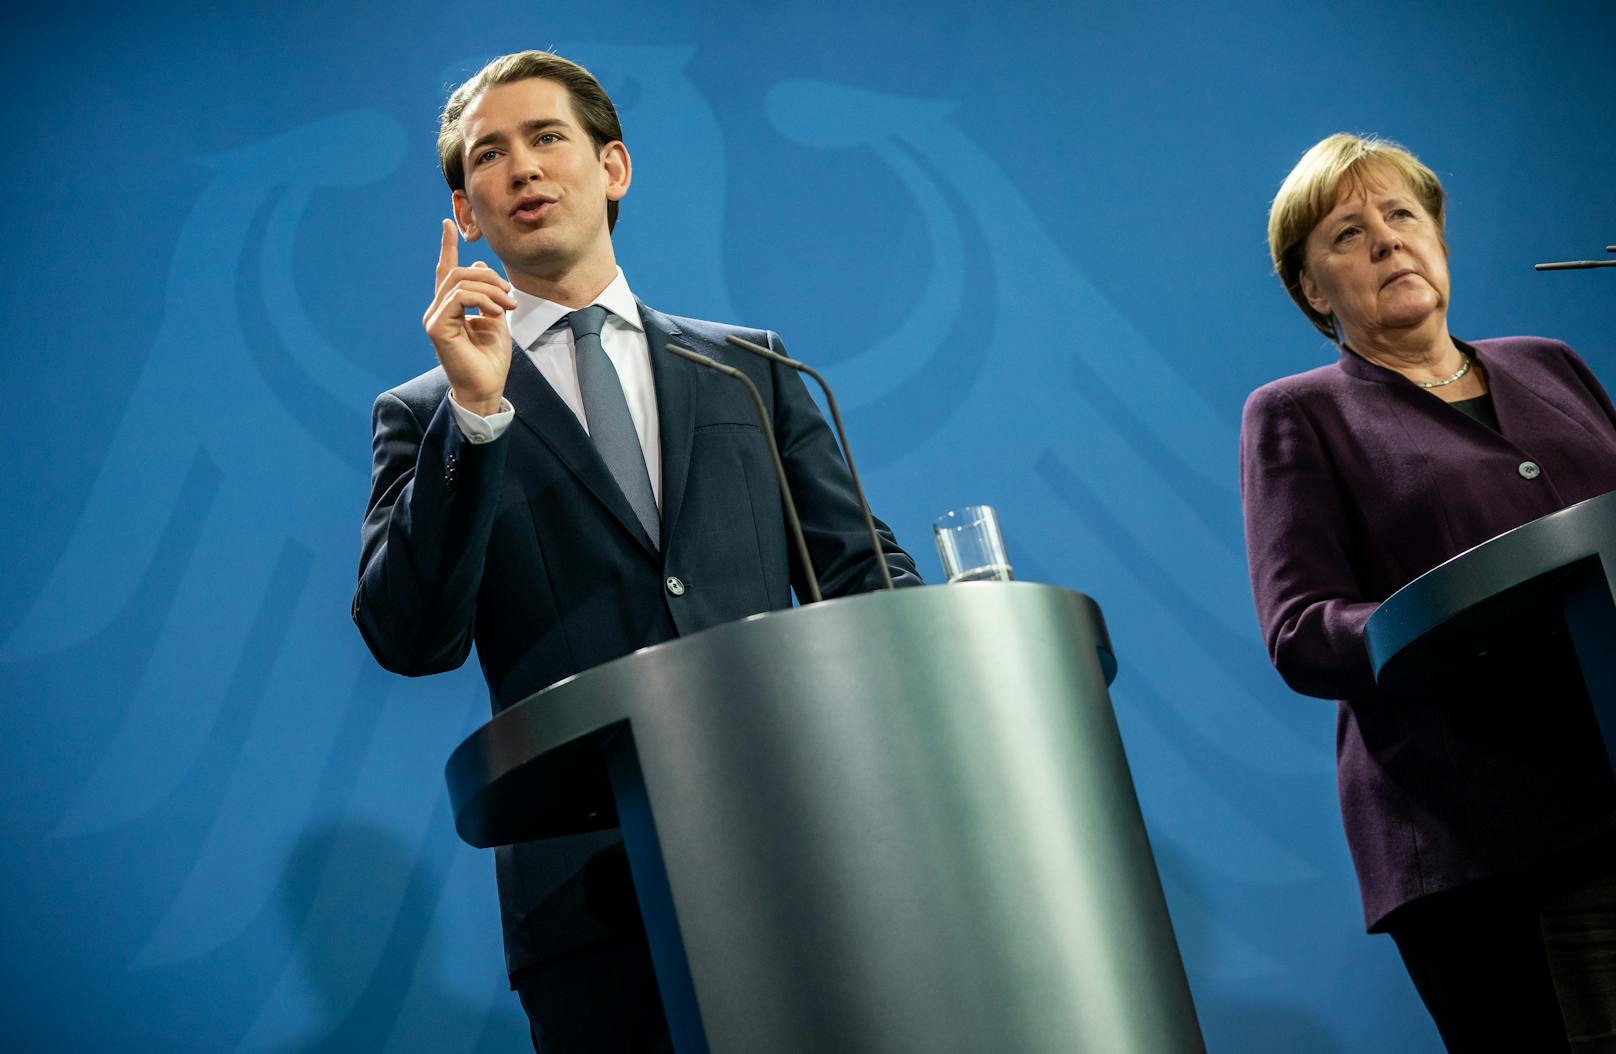 Bundeskanzler Sebastian Kurz (ÖVP, links) präsentiert einen Gegenentwurf <a href="https://www.heute.at/s/corona-macron-und-merkel-wollen-500-mrd-hilfspaket-100083074">zum von Emmanuel Macron und Angela Merkel (Bild rechts) vorgestellten deutsch-französischen Wiederaufbauplan</a>.